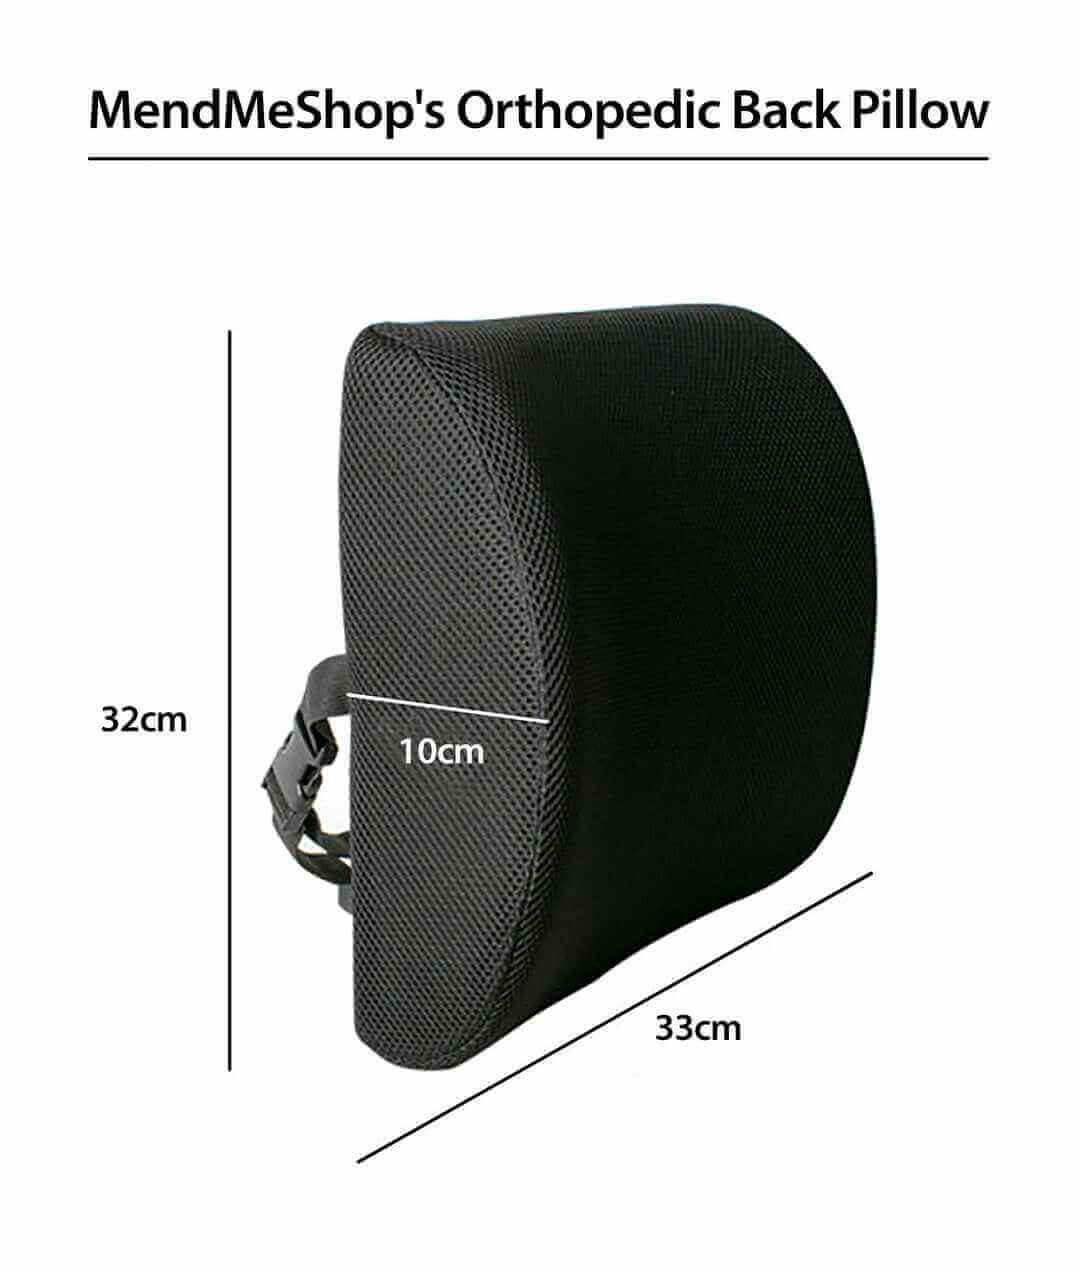 https://shop.tshellz.com/cdn/shop/products/mendmeshop-orthopedic-back-pillow-measurement-new_1800x1800.jpg?v=1689090774